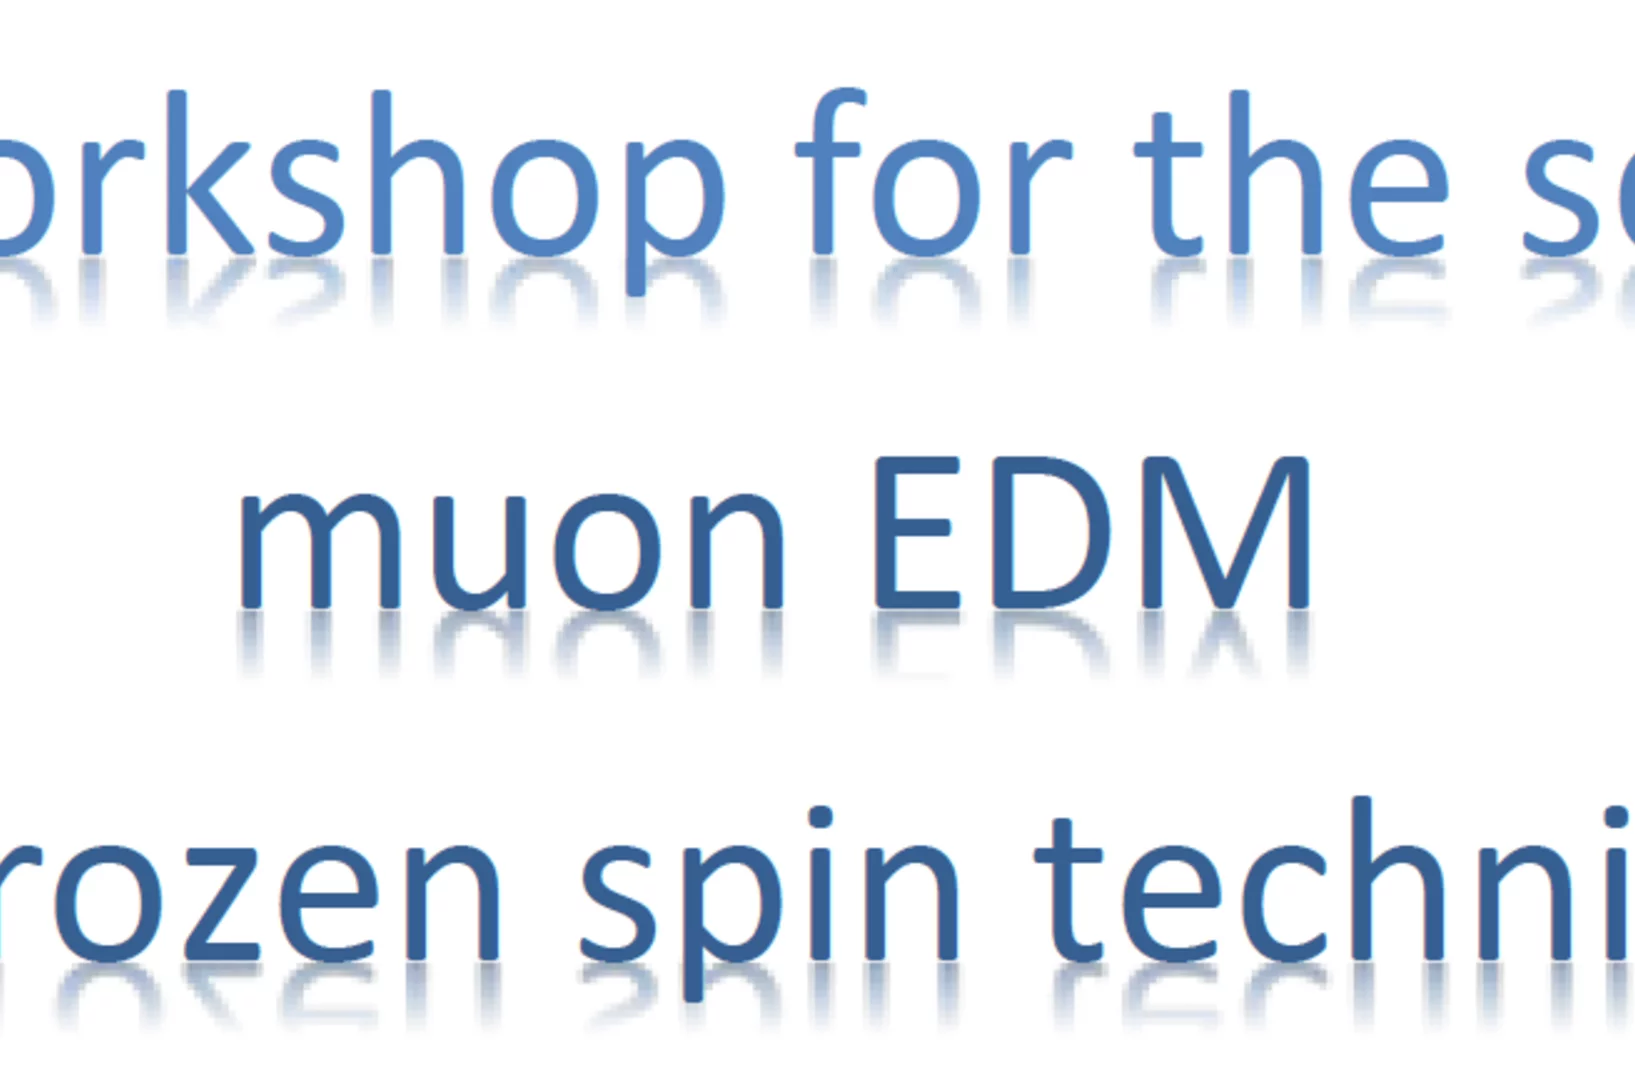 Muon EDM Workshop 2020